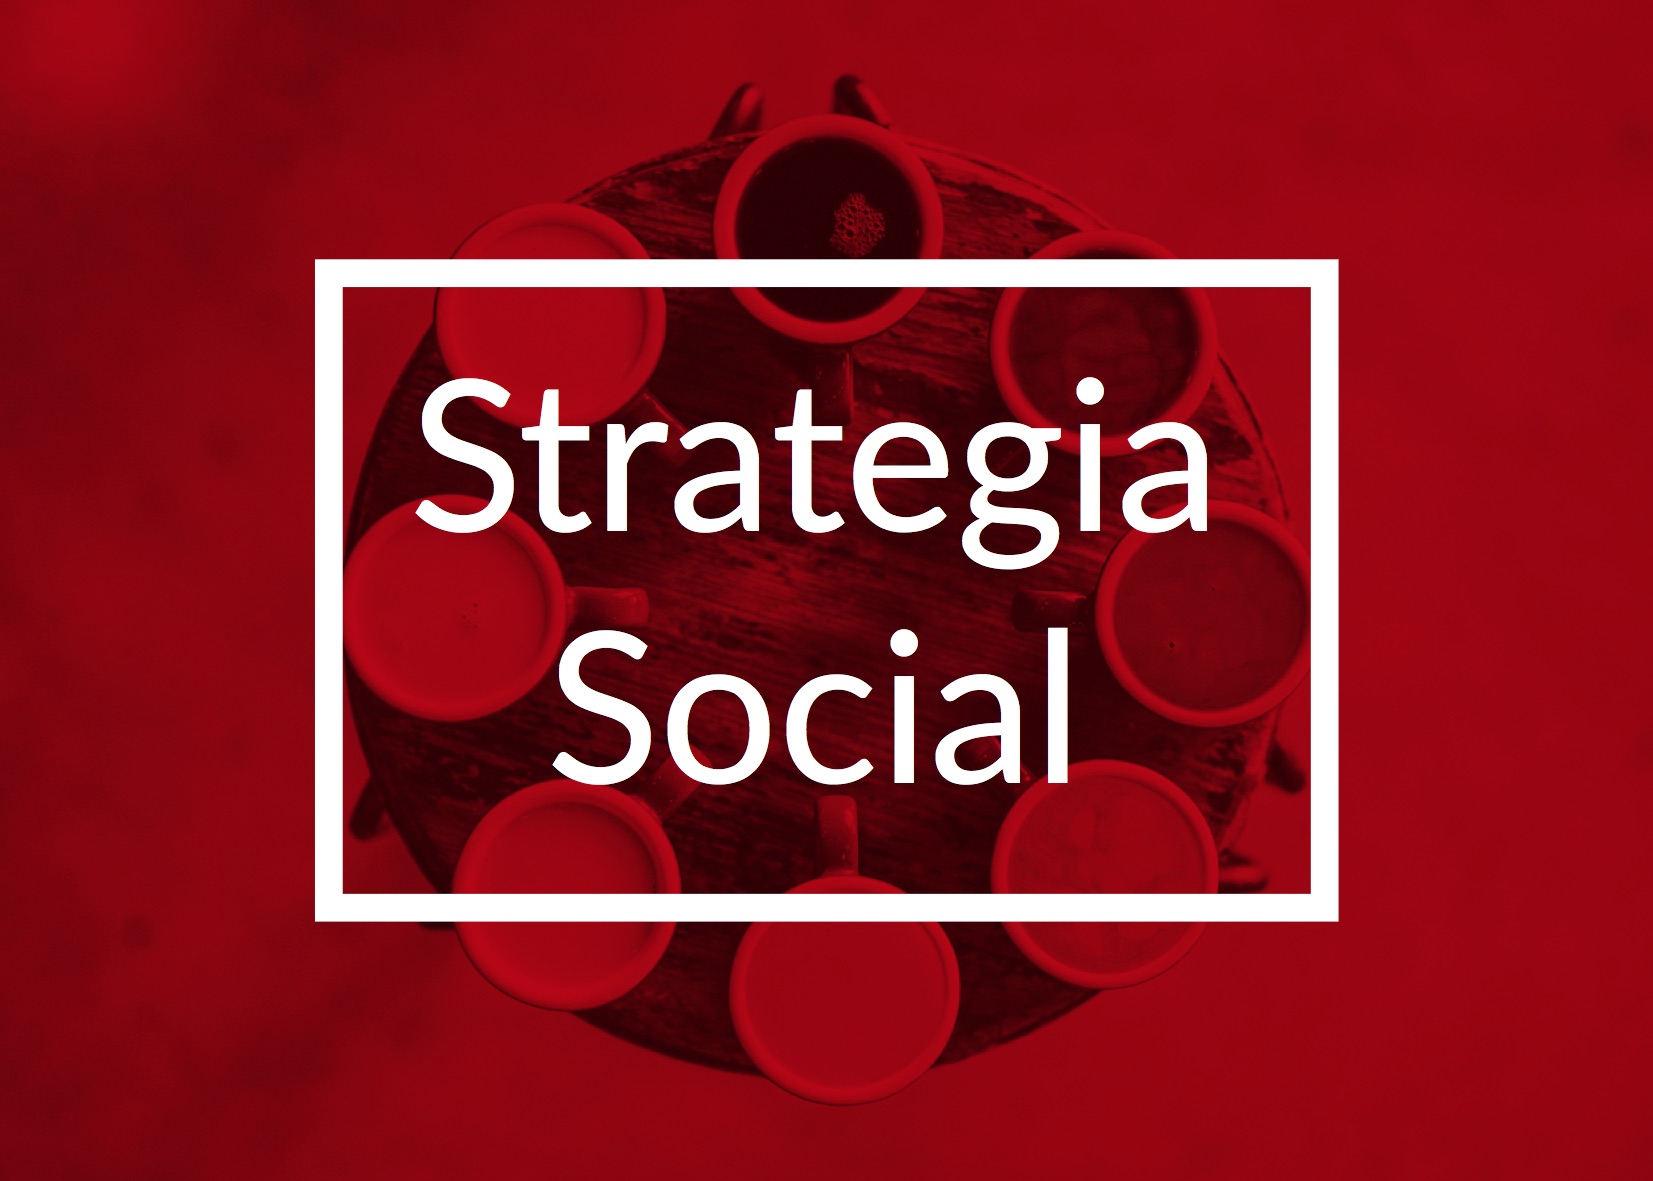 Strategia Social